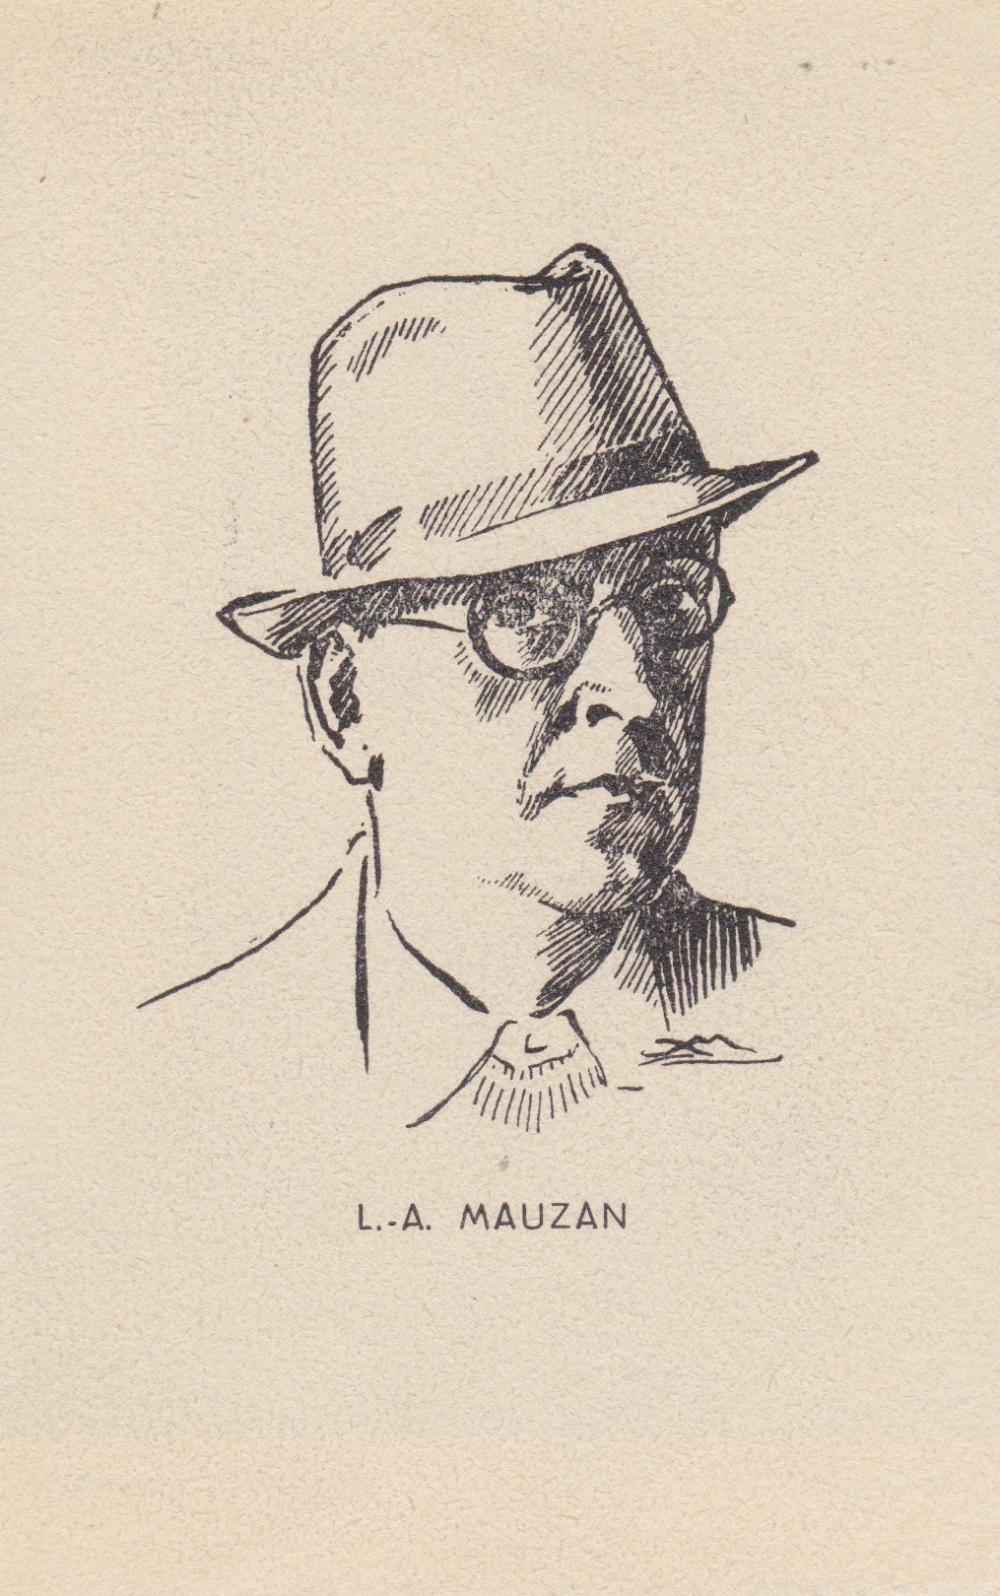 Lucien Achille MAUZAN